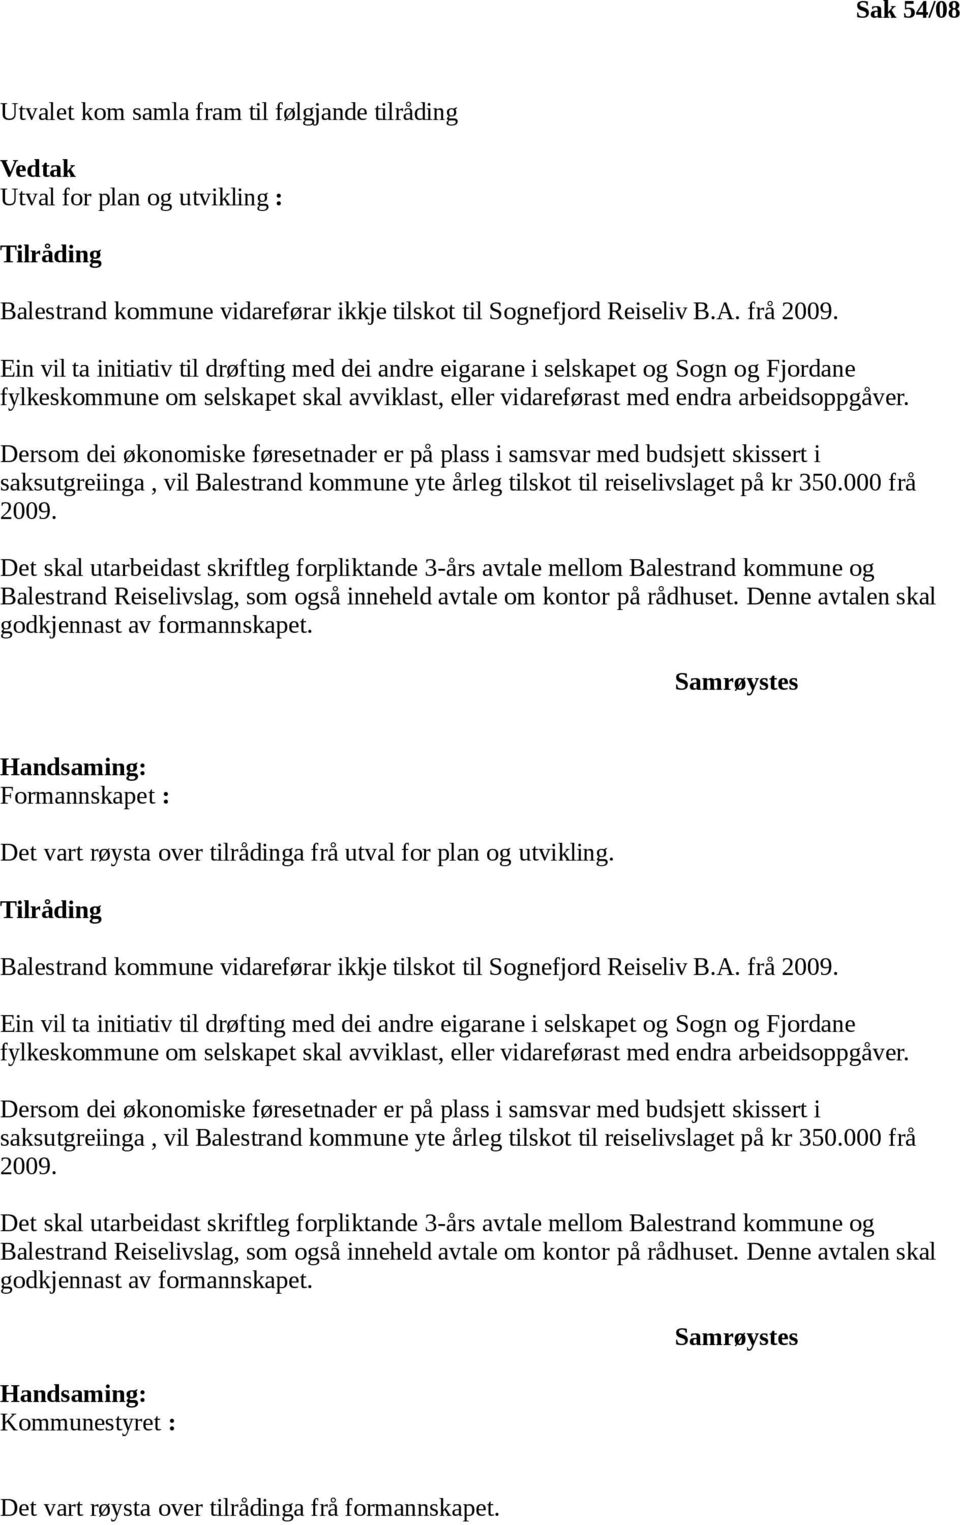 Dersom dei økonomiske føresetnader er på plass i samsvar med budsjett skissert i saksutgreiinga, vil Balestrand kommune yte årleg tilskot til reiselivslaget på kr 350.000 frå 2009.